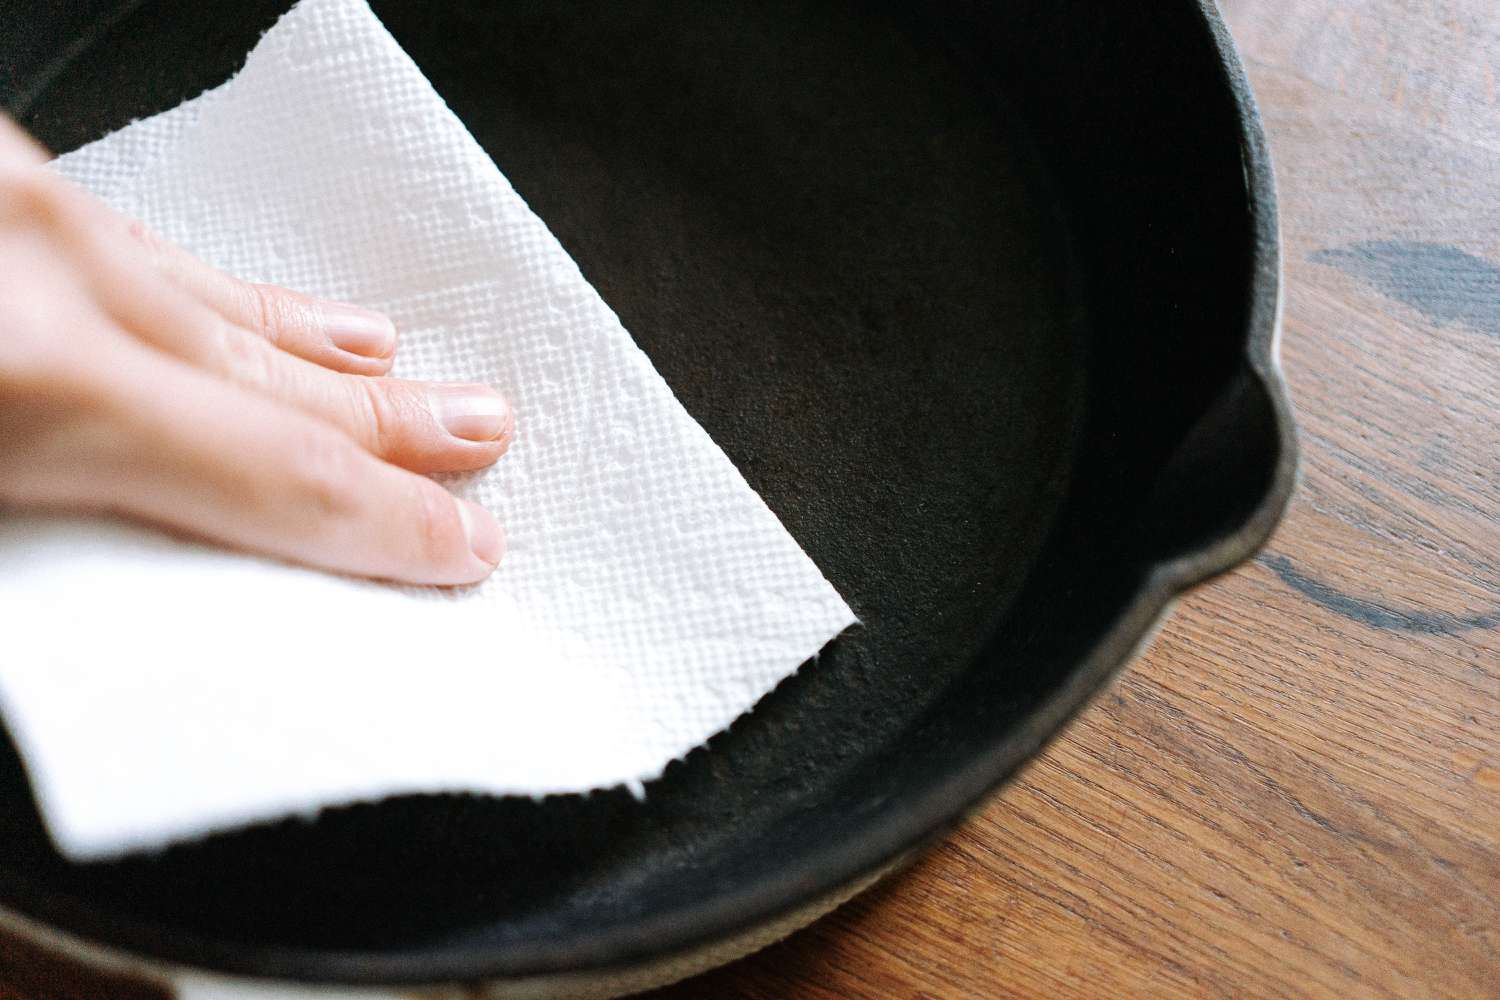 limpiando hierro fundido con una toalla de papel